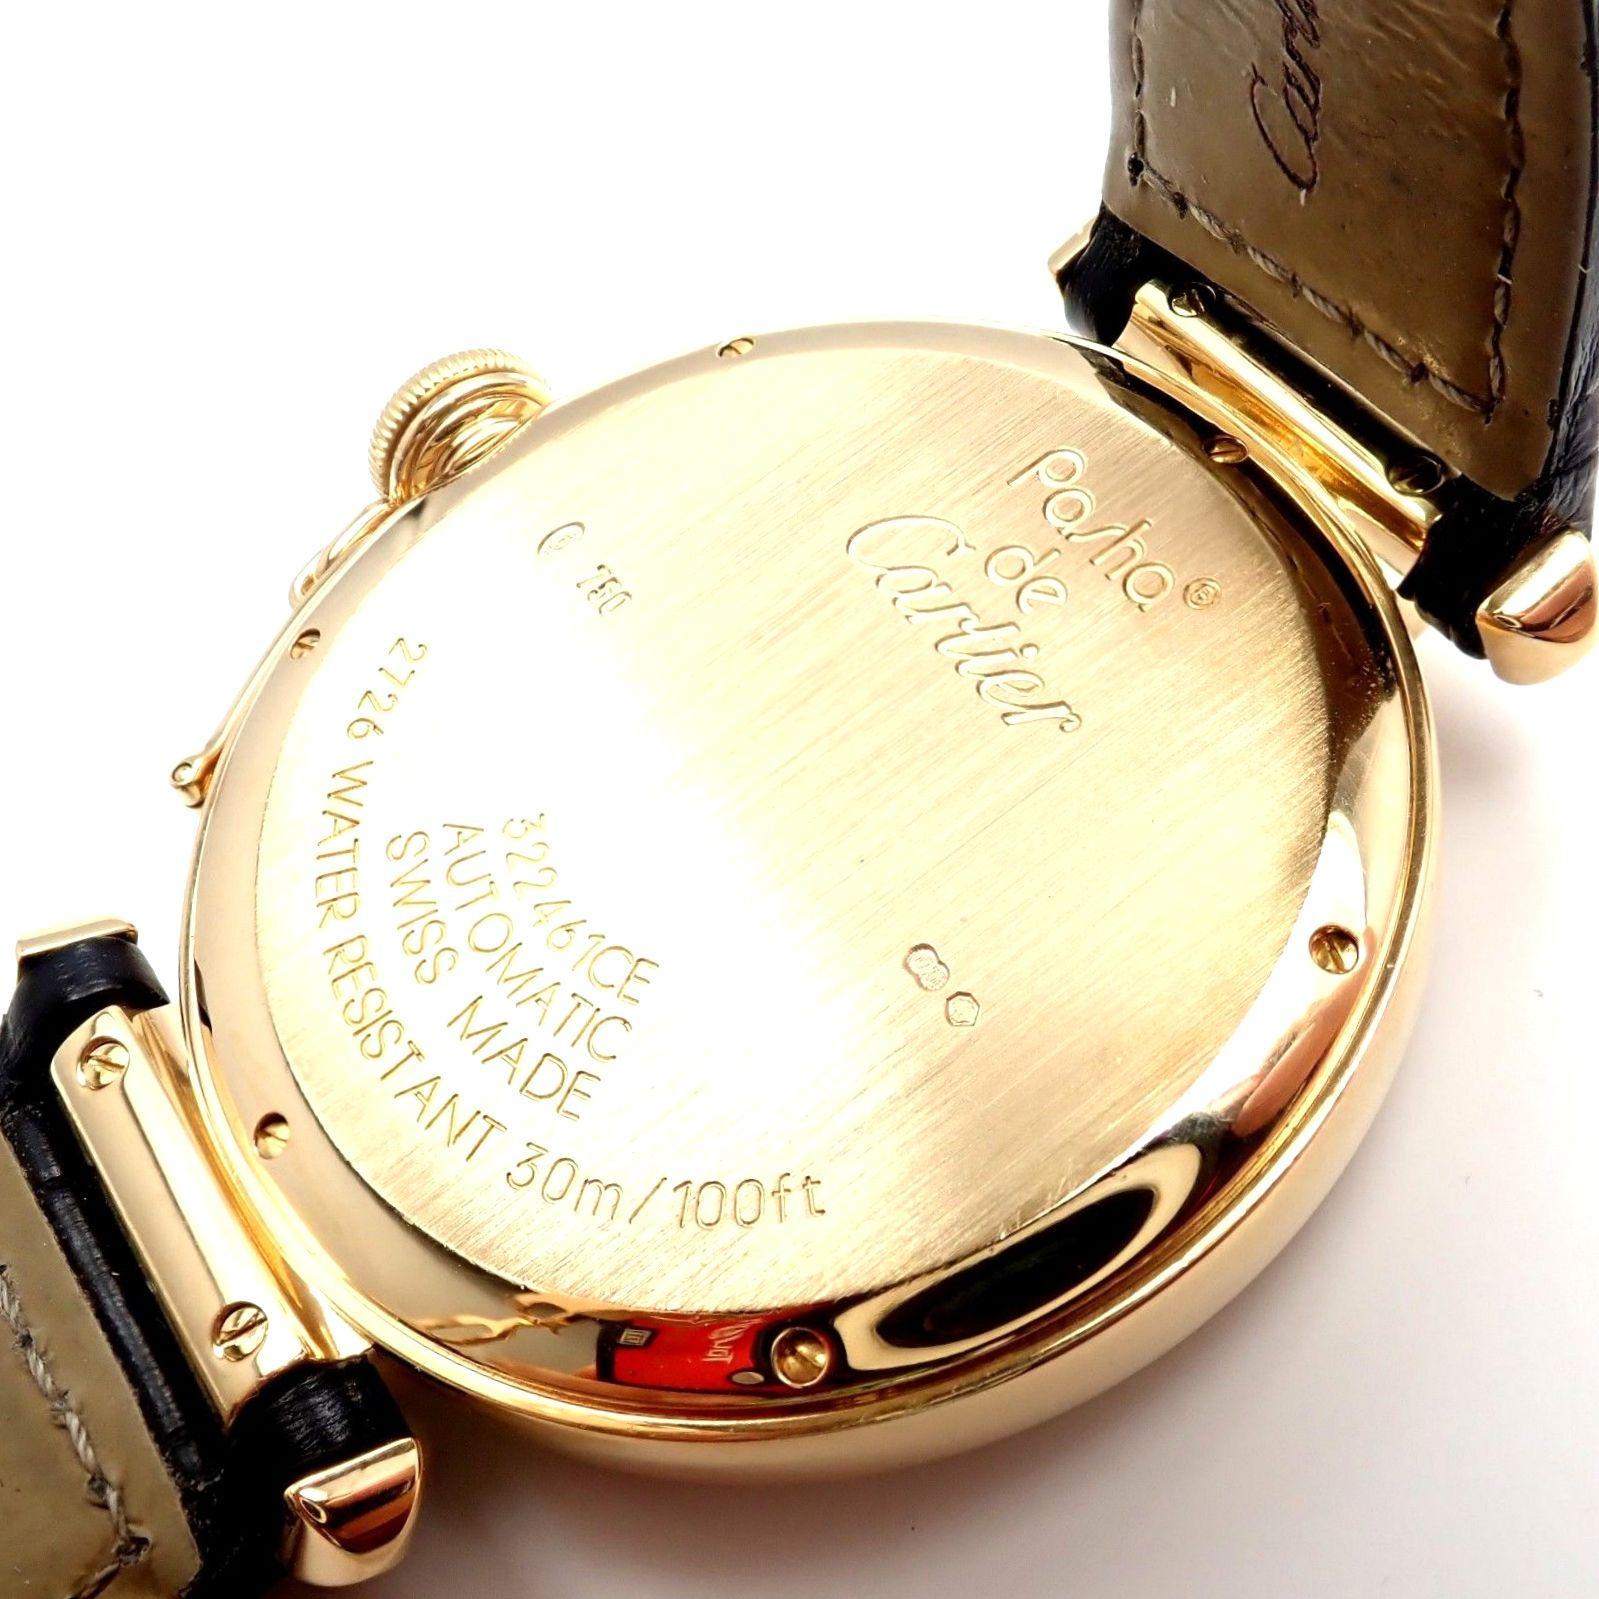 Cartier Pasha Diamond Automatic Yellow Gold Watch 1